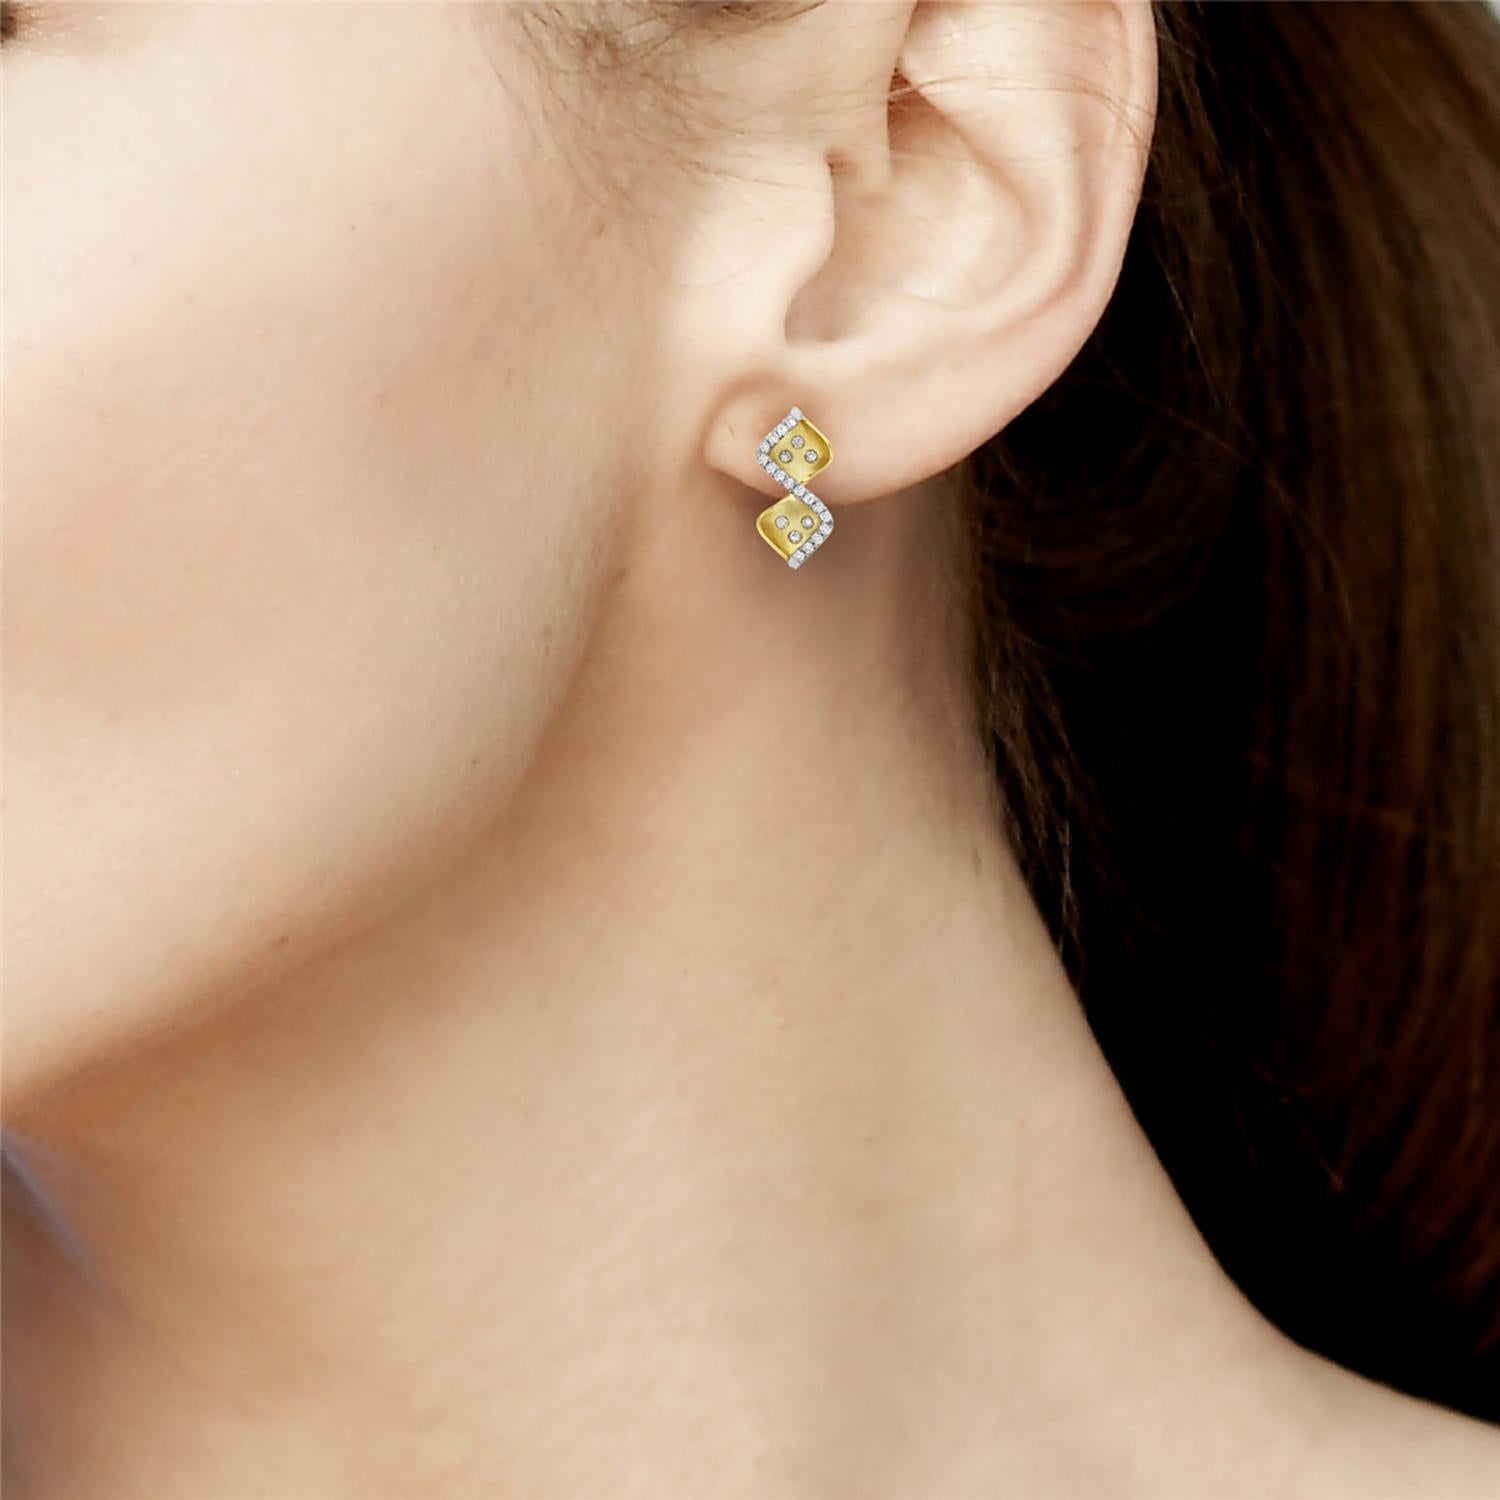 Faites-vous remarquer avec ces superbes boucles d'oreilles en forme de zig zag, fabriquées en or jaune 14k et ornées d'un halo de diamants étincelants. Ces boucles d'oreilles ne manqueront pas d'attirer le regard et d'ajouter une touche d'élégance à